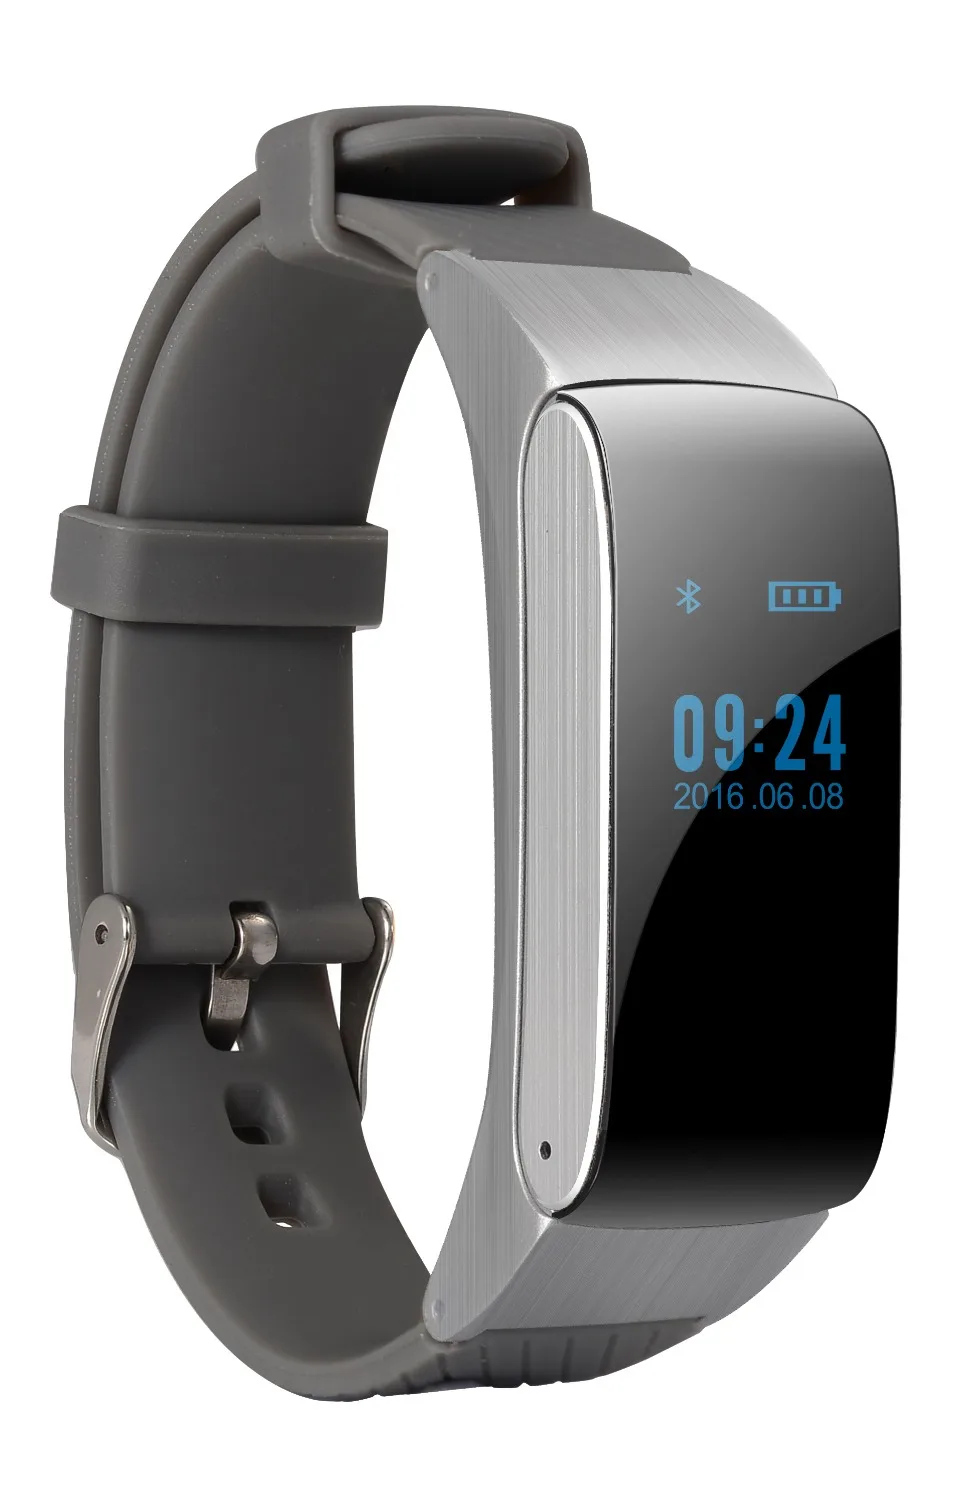 Смарт-браслет DF22 Bluetooth часы браслет портативный шагомер Активный Фитнес-трекер для IOS Android телефон